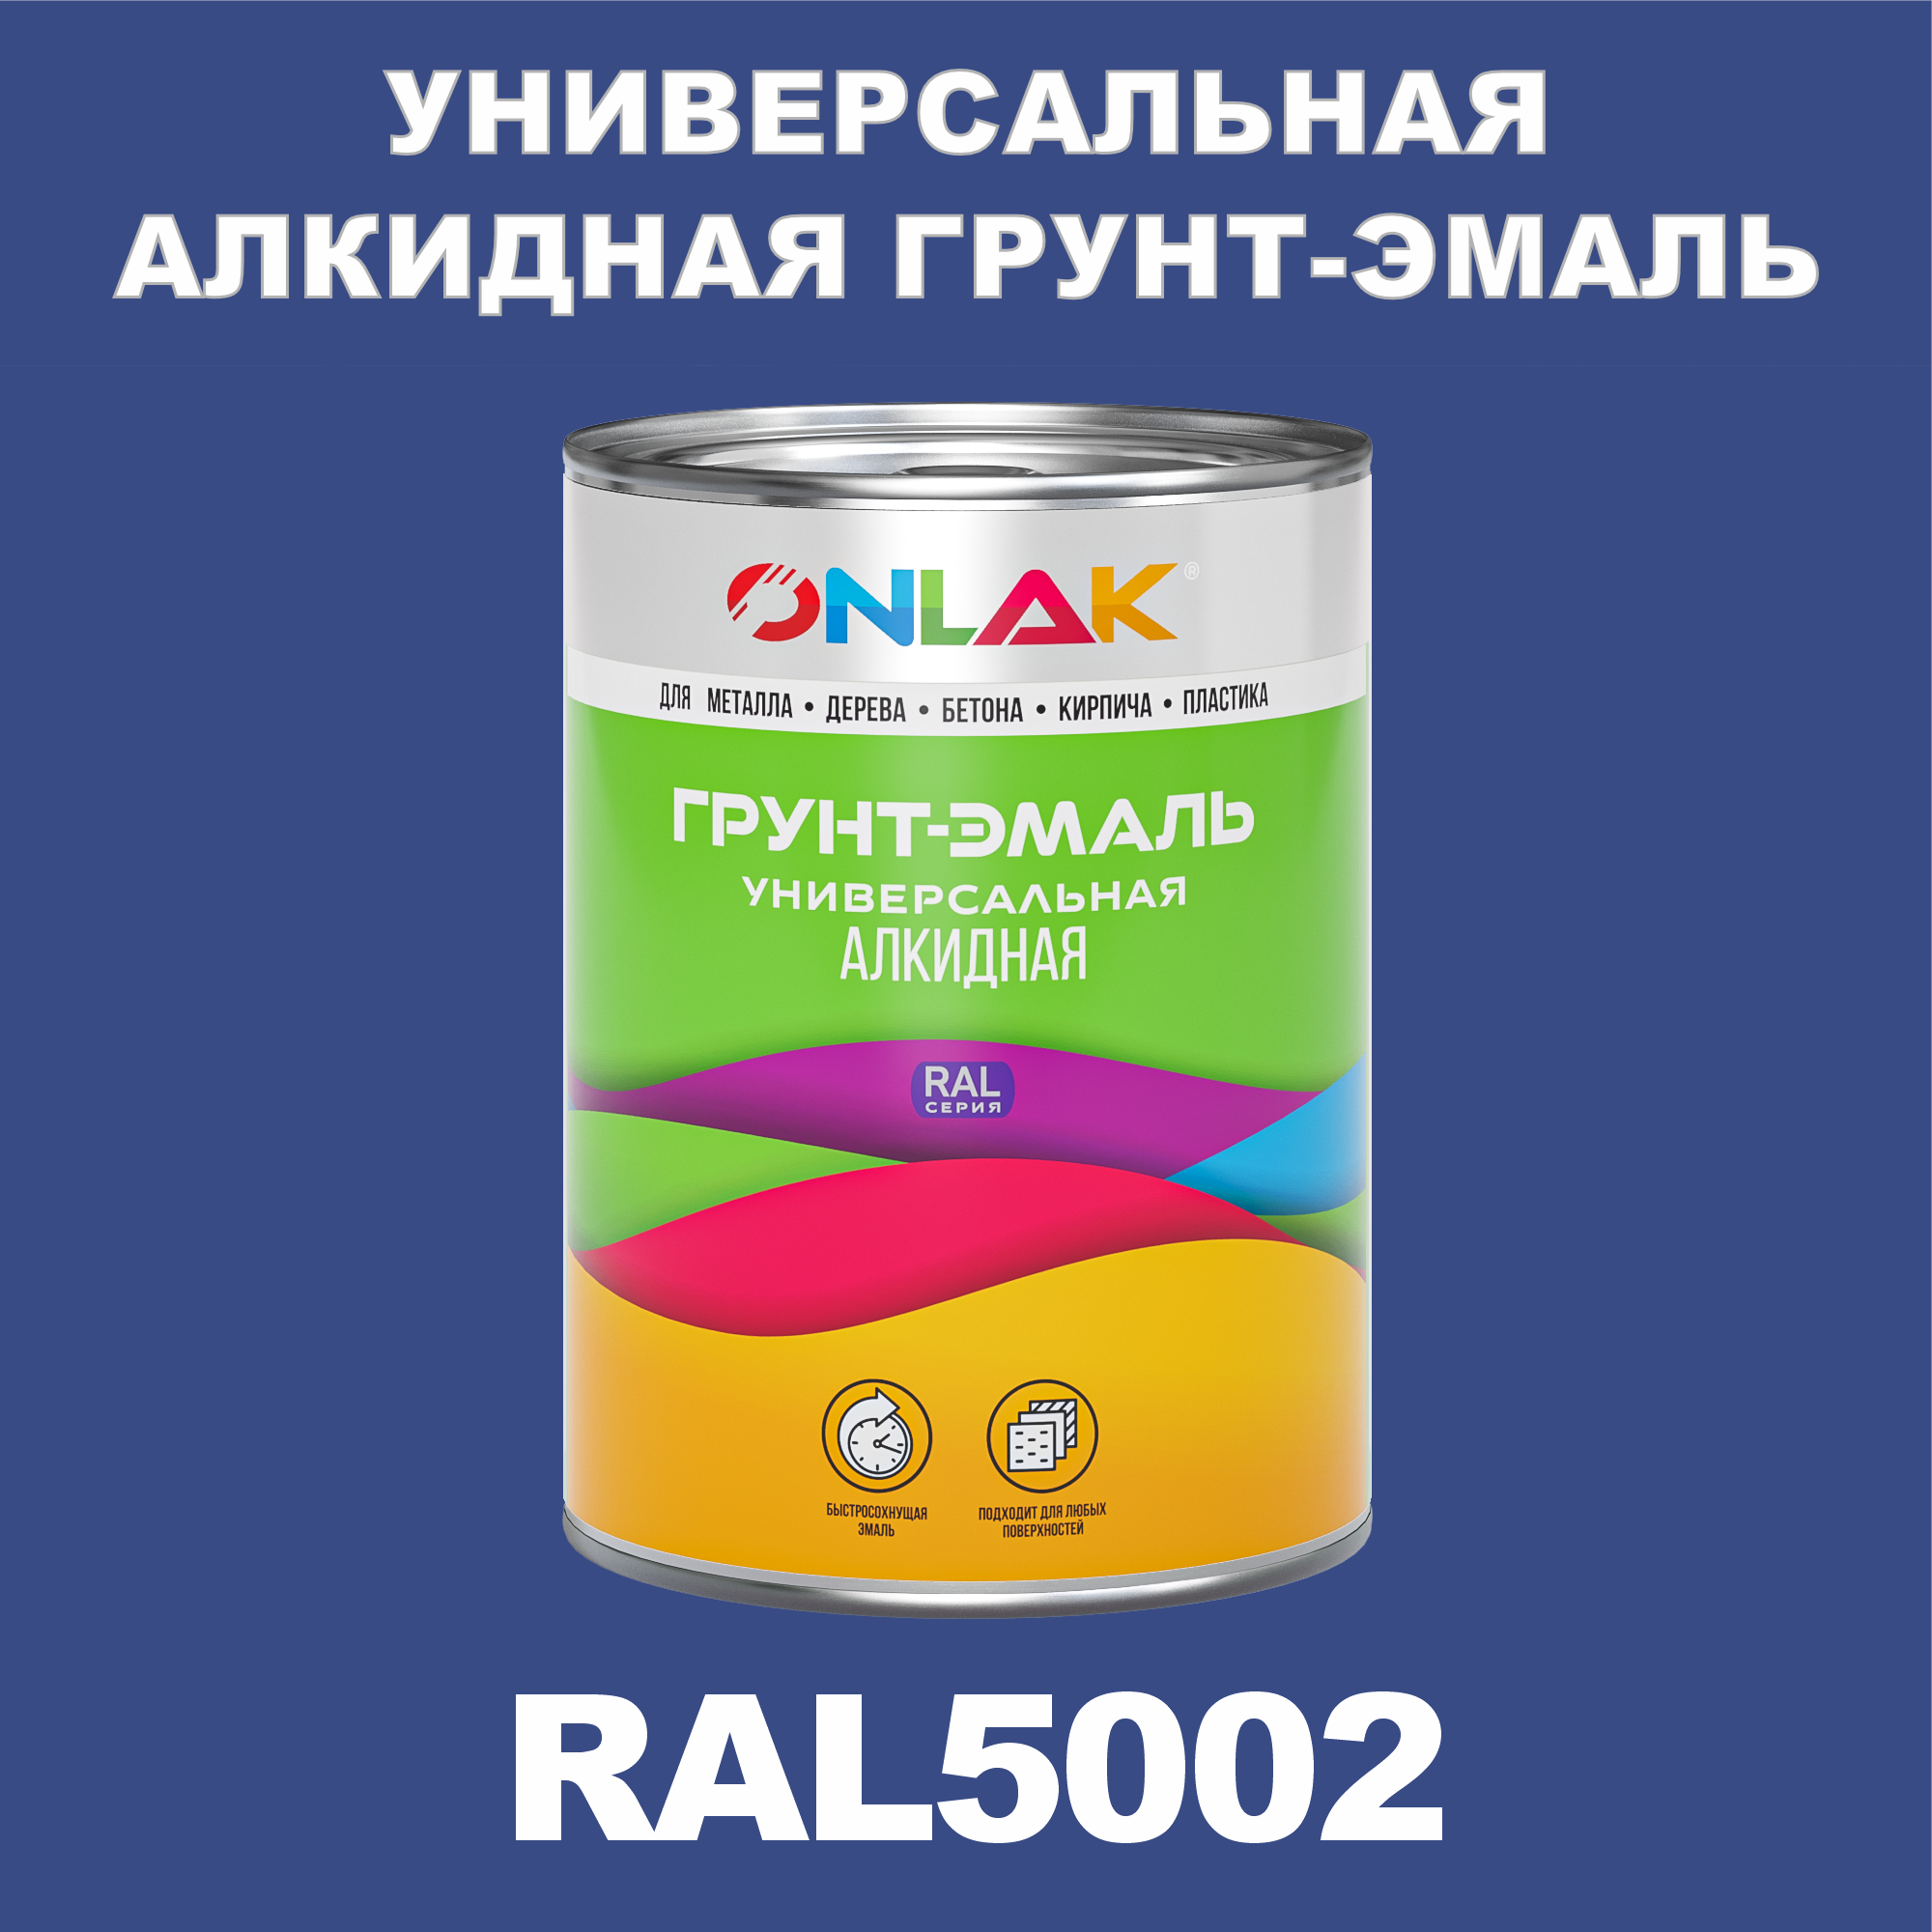 Грунт-эмаль ONLAK 1К RAL5002 антикоррозионная алкидная по металлу по ржавчине 1 кг грунт эмаль алкидная аэрозольная по ржавчине престиж 3 в 1 425 мл коричневая